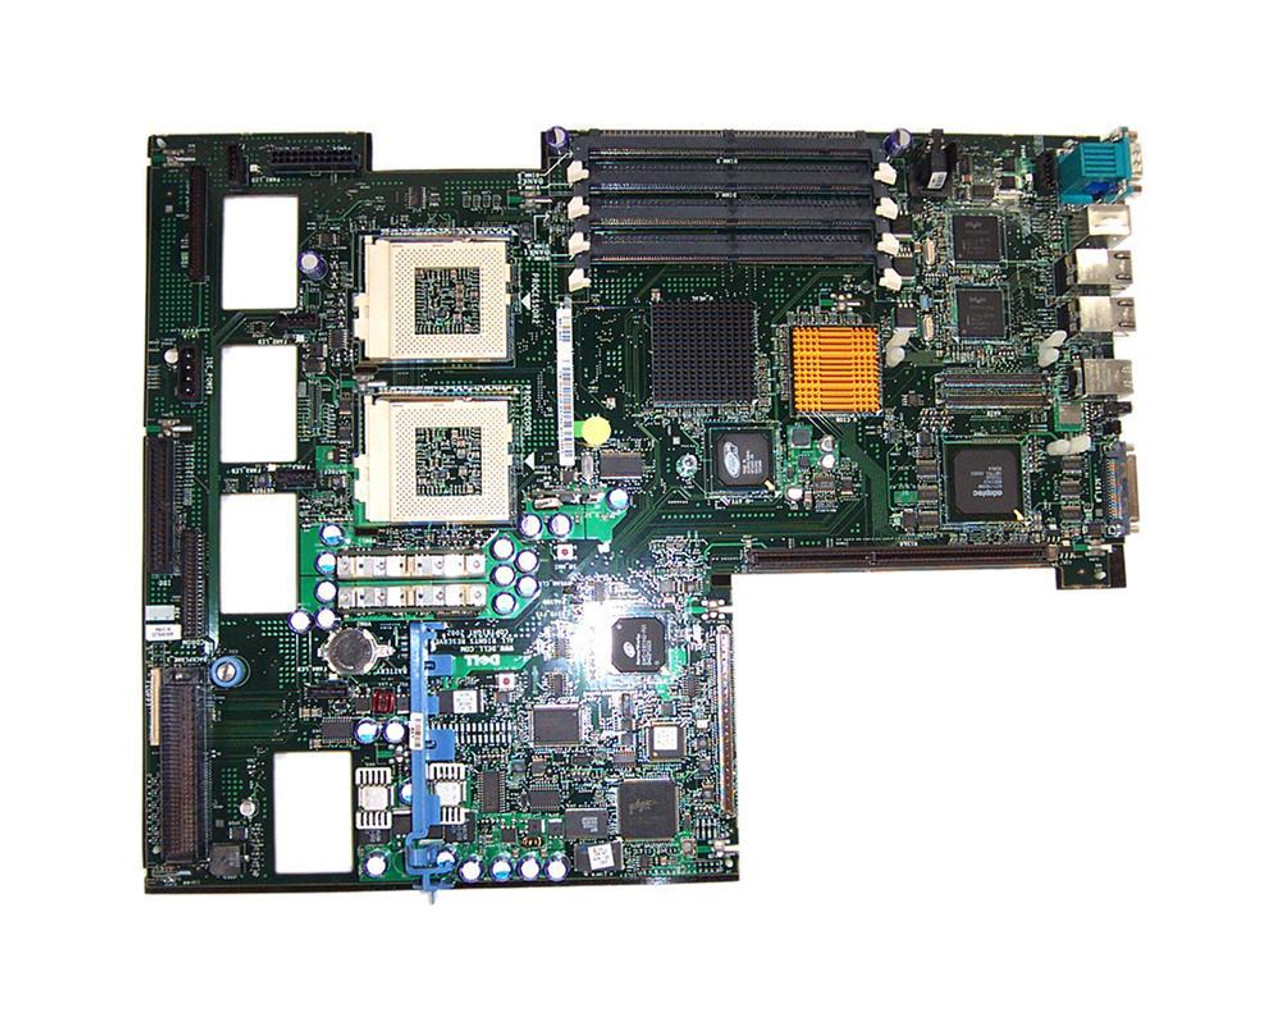 M0443-U Dell System Board (Motherboard) for PowerEdge 1650 Server (Refurbished)